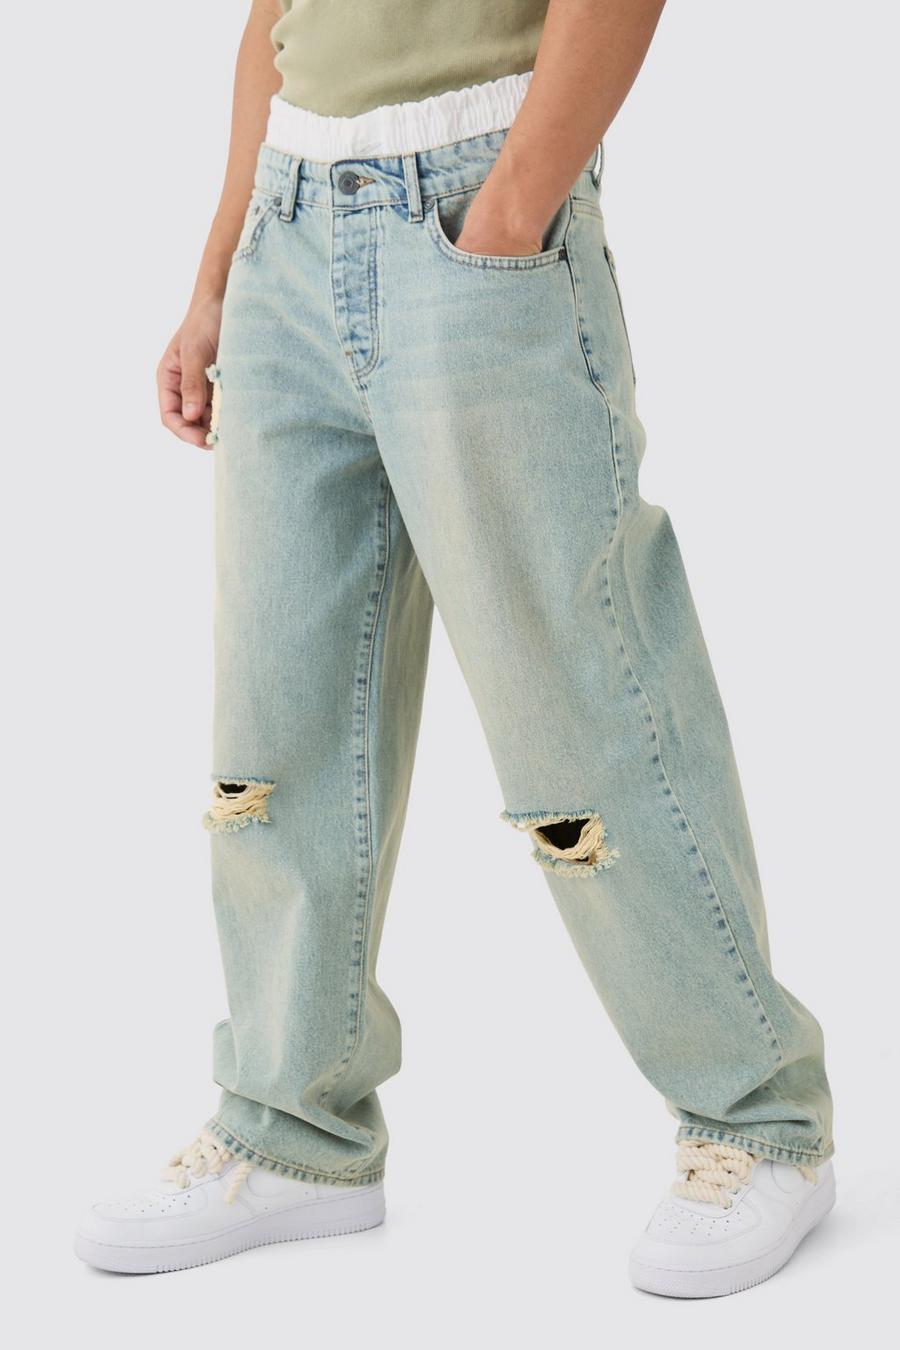 Jeans Boxer extra comodi in denim rigido blu antico con fascia in vita e strappi sul ginocchio, Antique blue